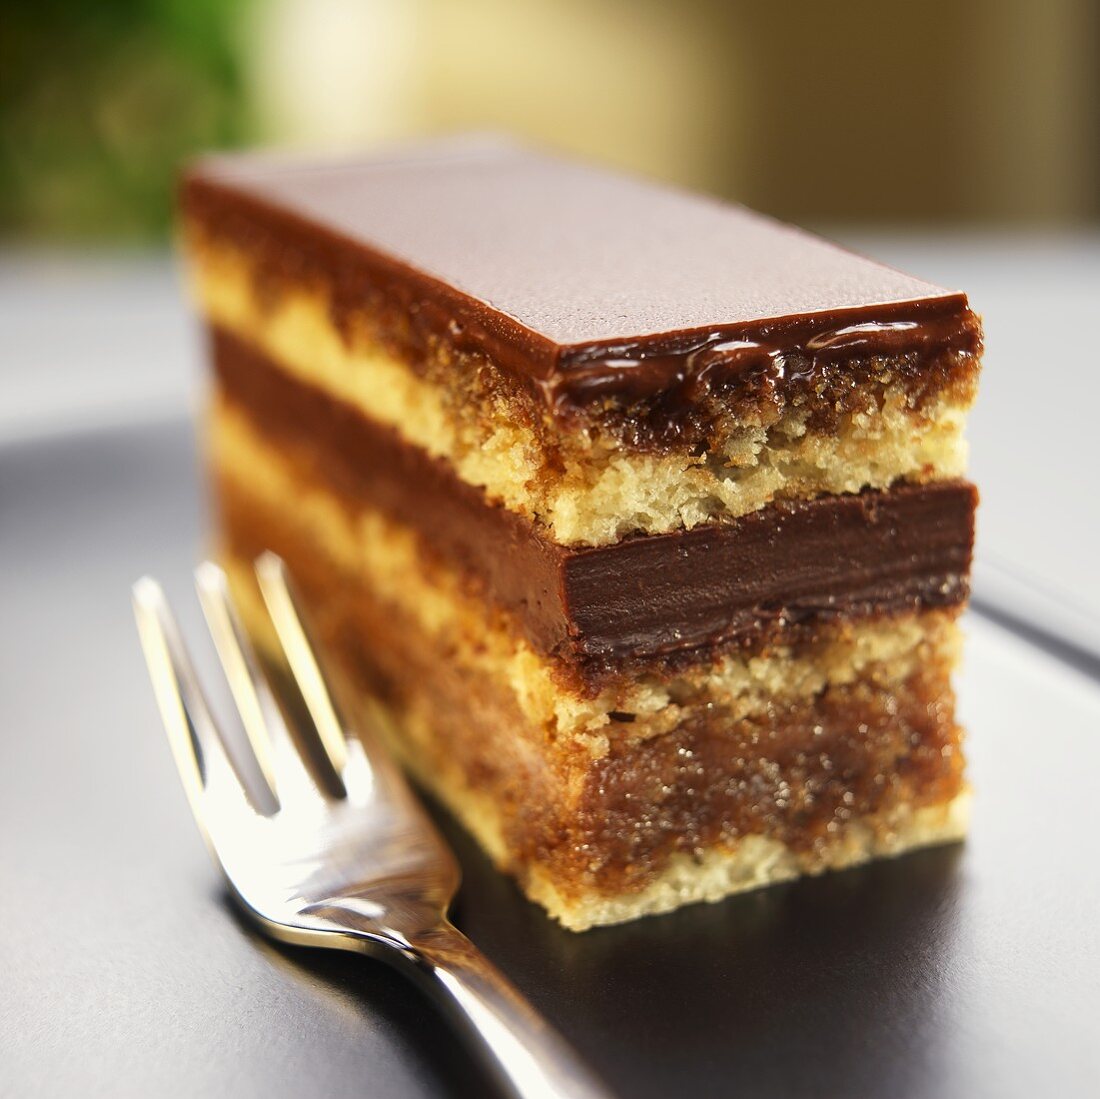 Opera cake (Schokoschnitten mit Mandelteig & Kaffeesirup, USA)